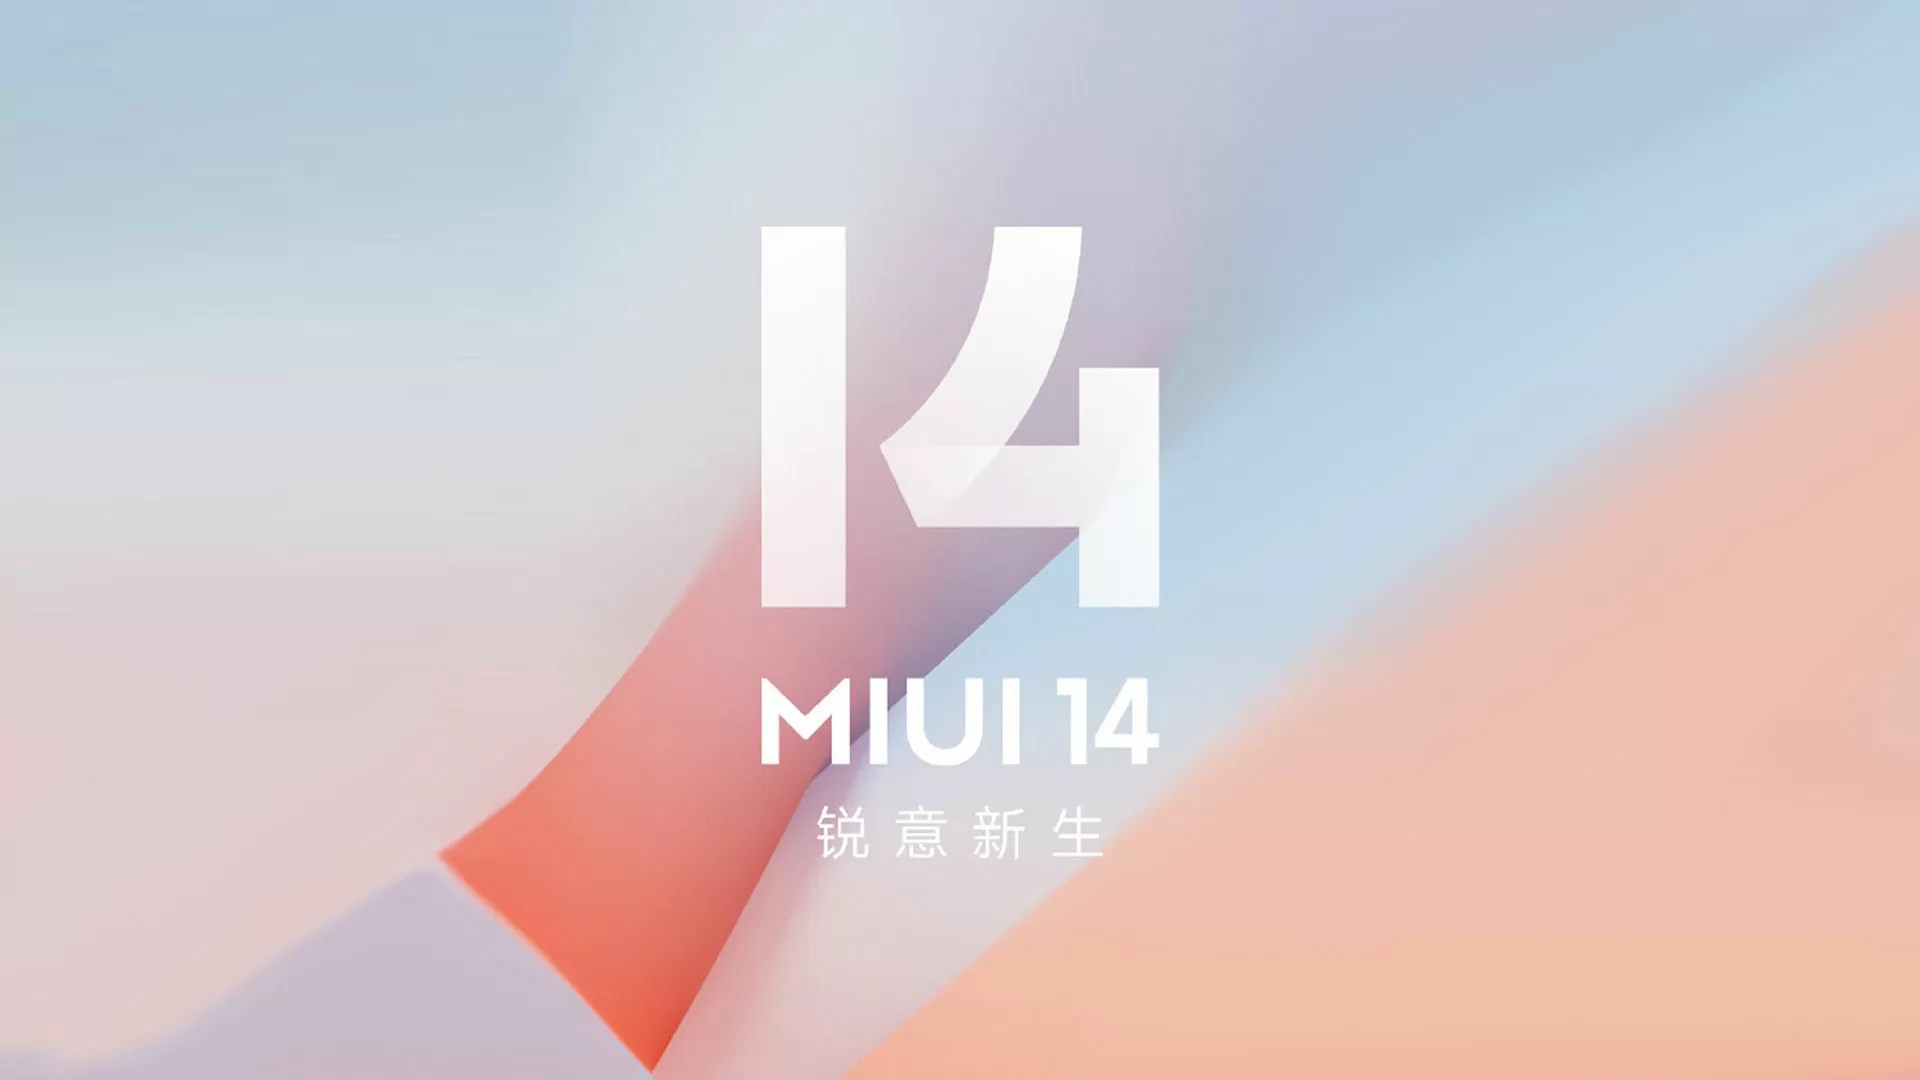 MIUI 14 özellikleri ve yenilikler